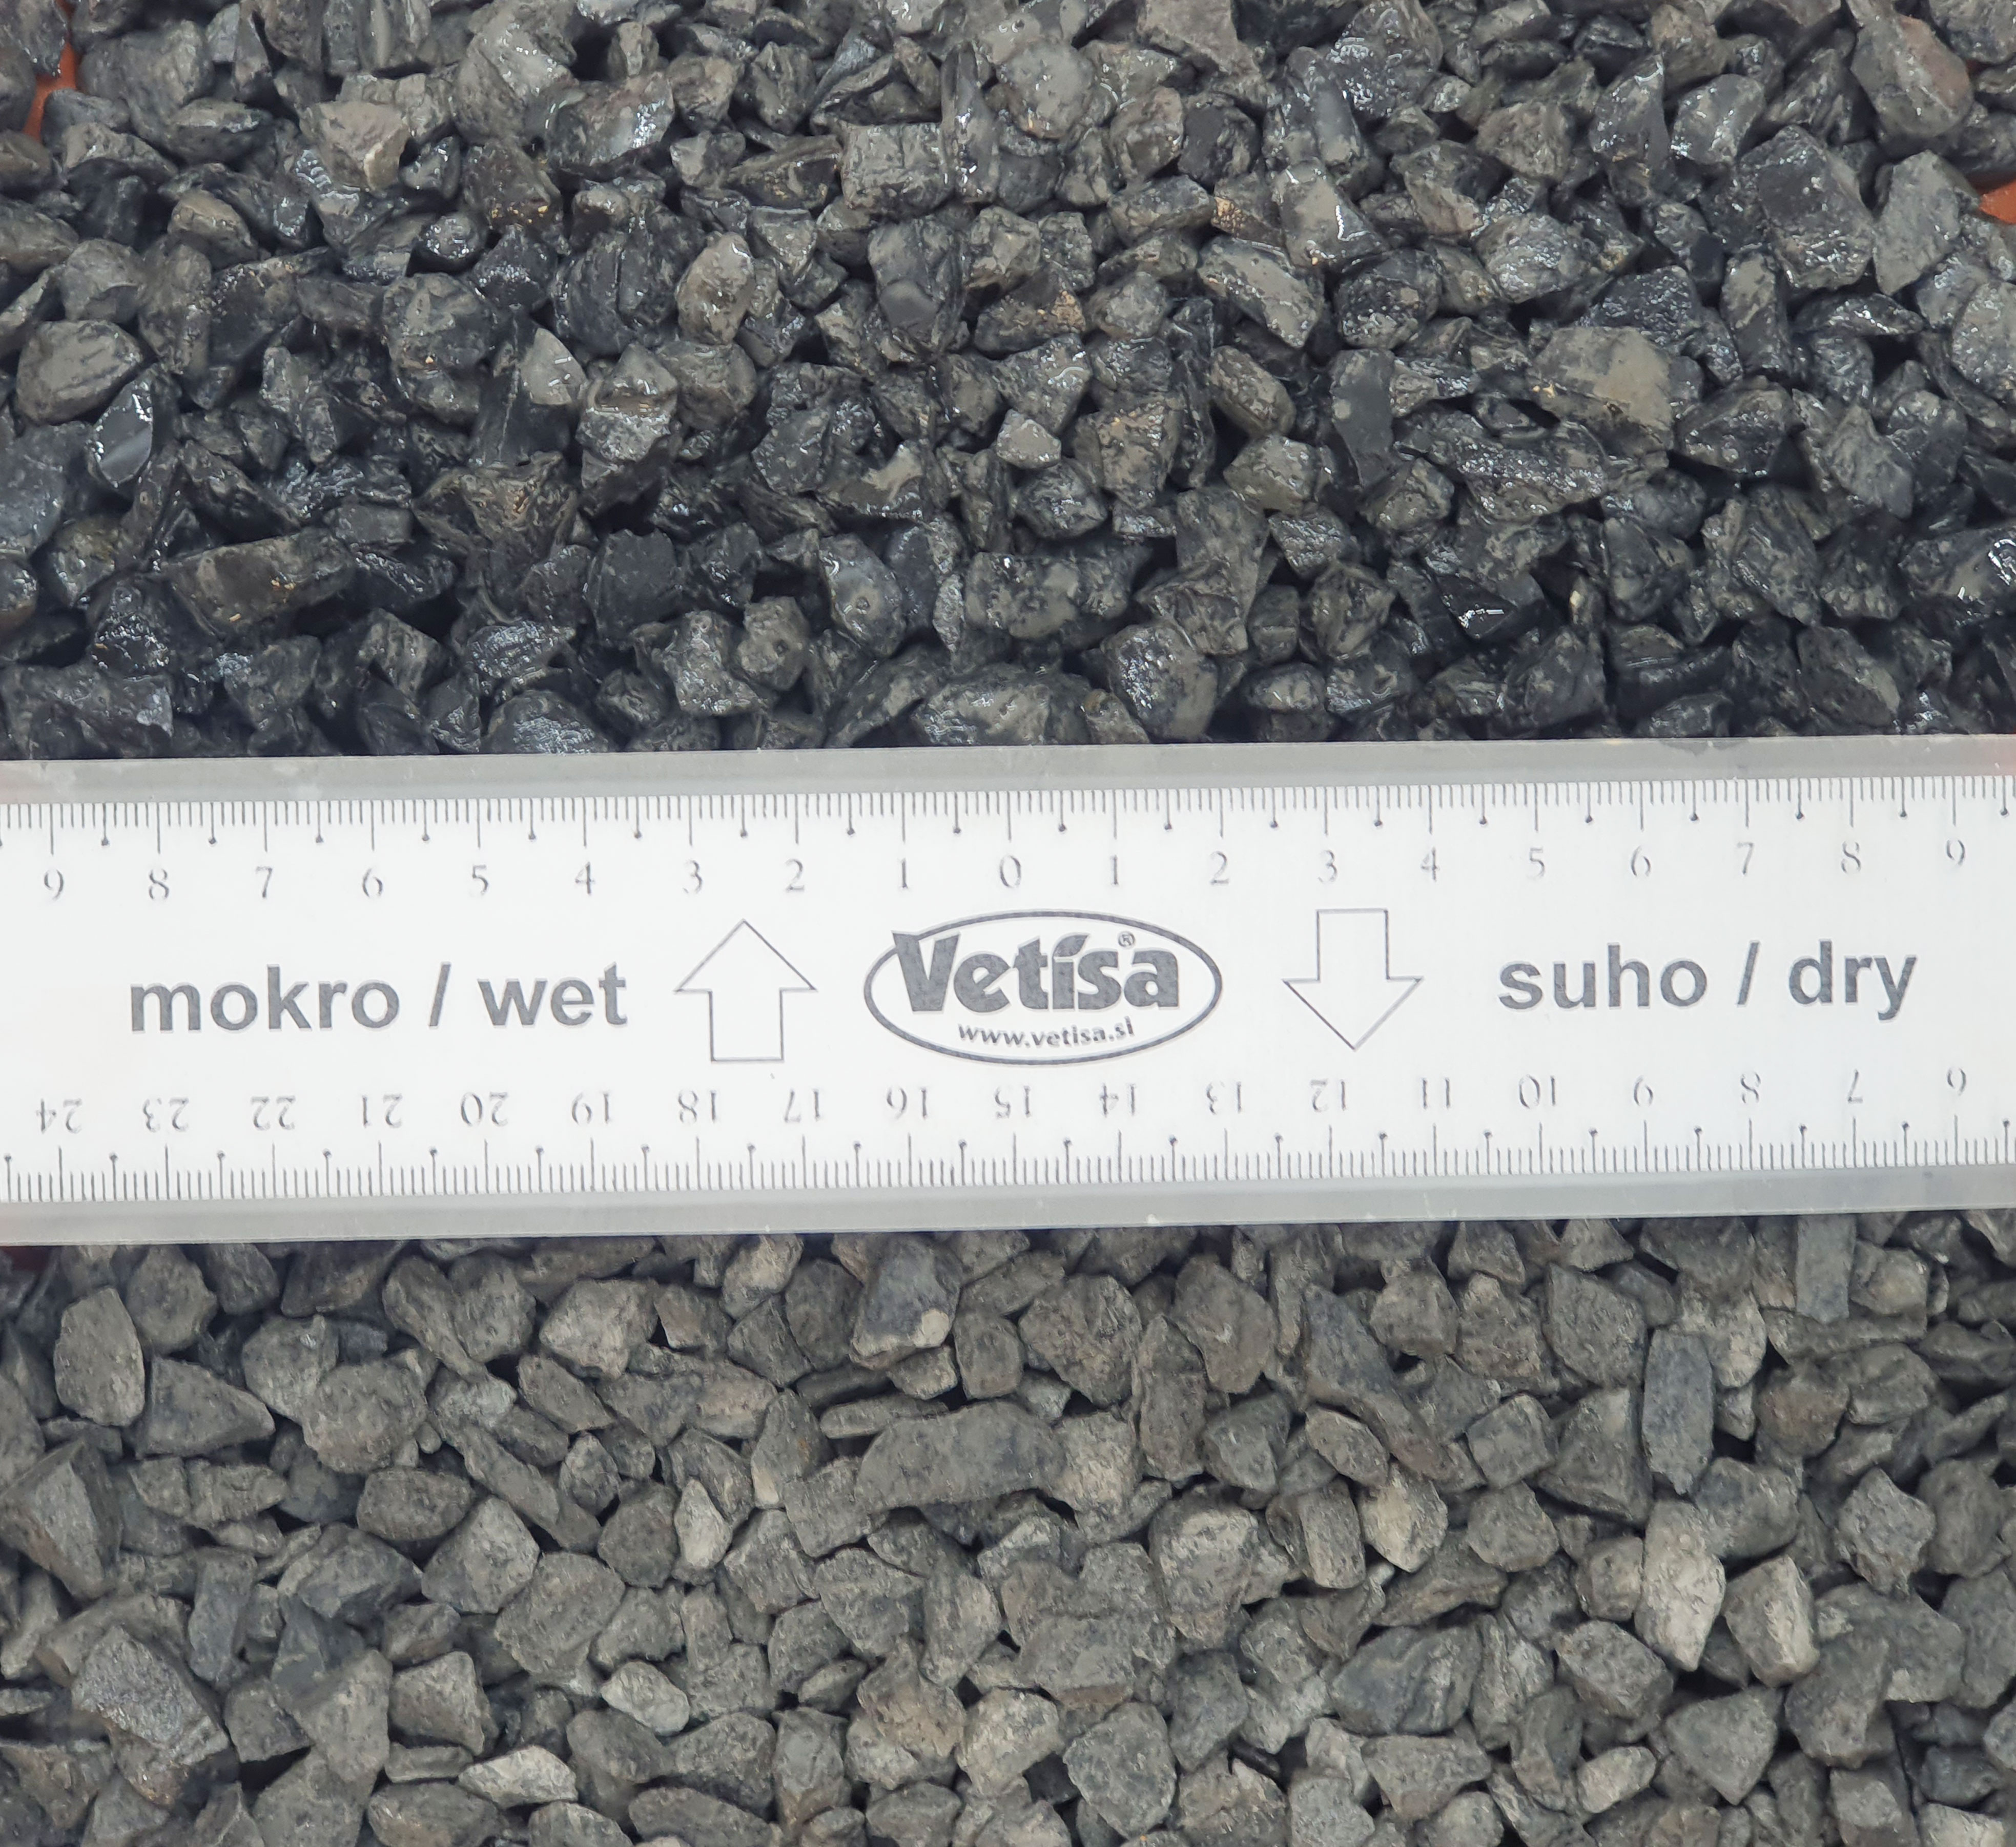 Vetisa- Nero Ebano 25KG ( 9-12 mm) 48/p - Črni marmorni pesek